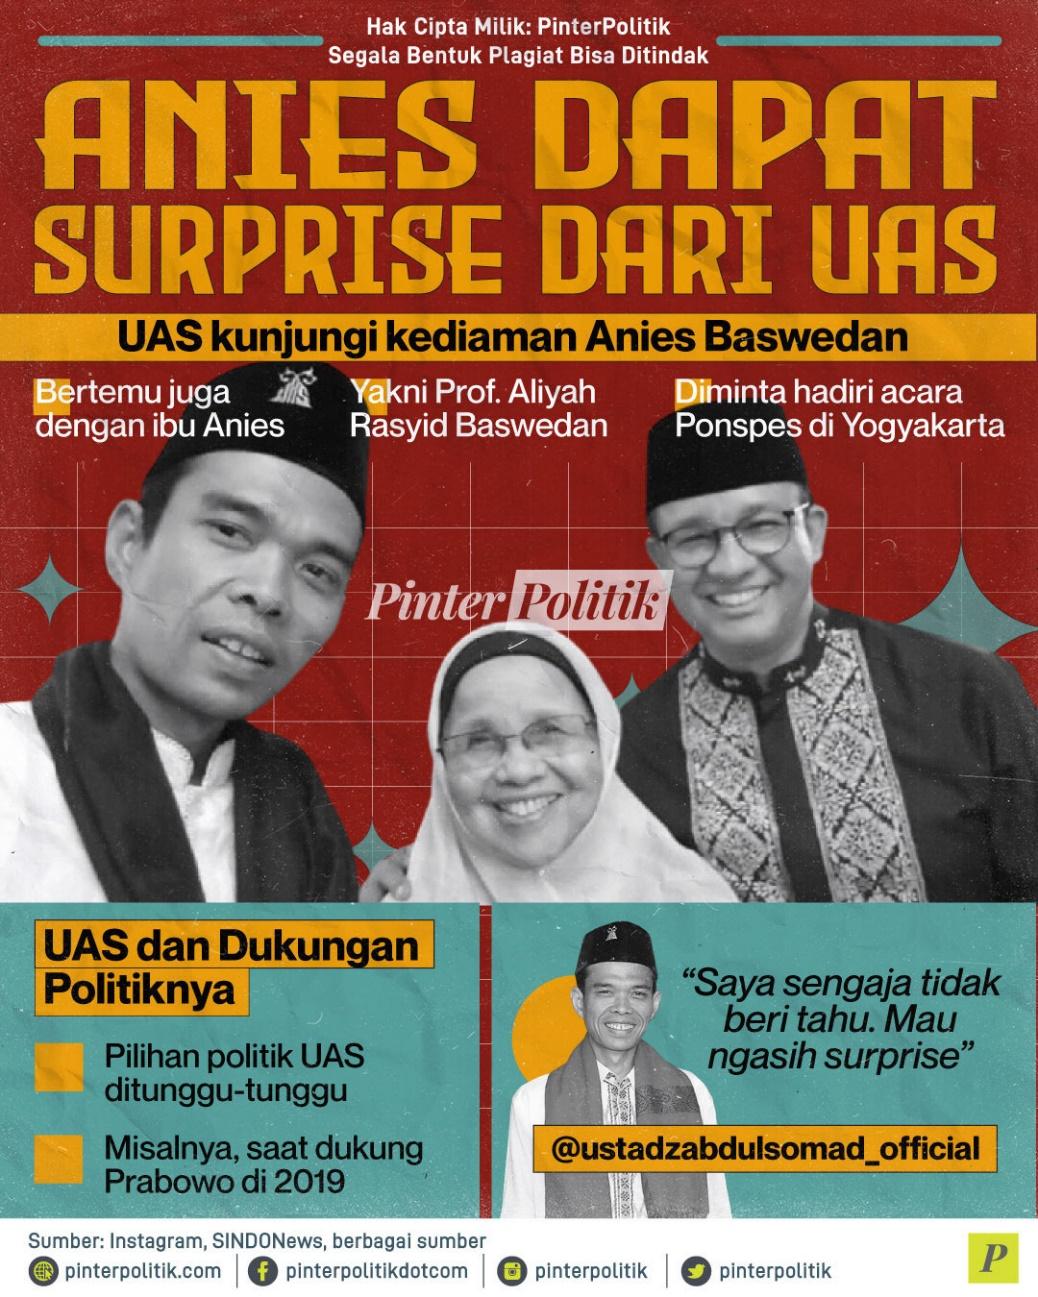 Anies Dapat Surprise dari UAS Ustadz Abdul Somad